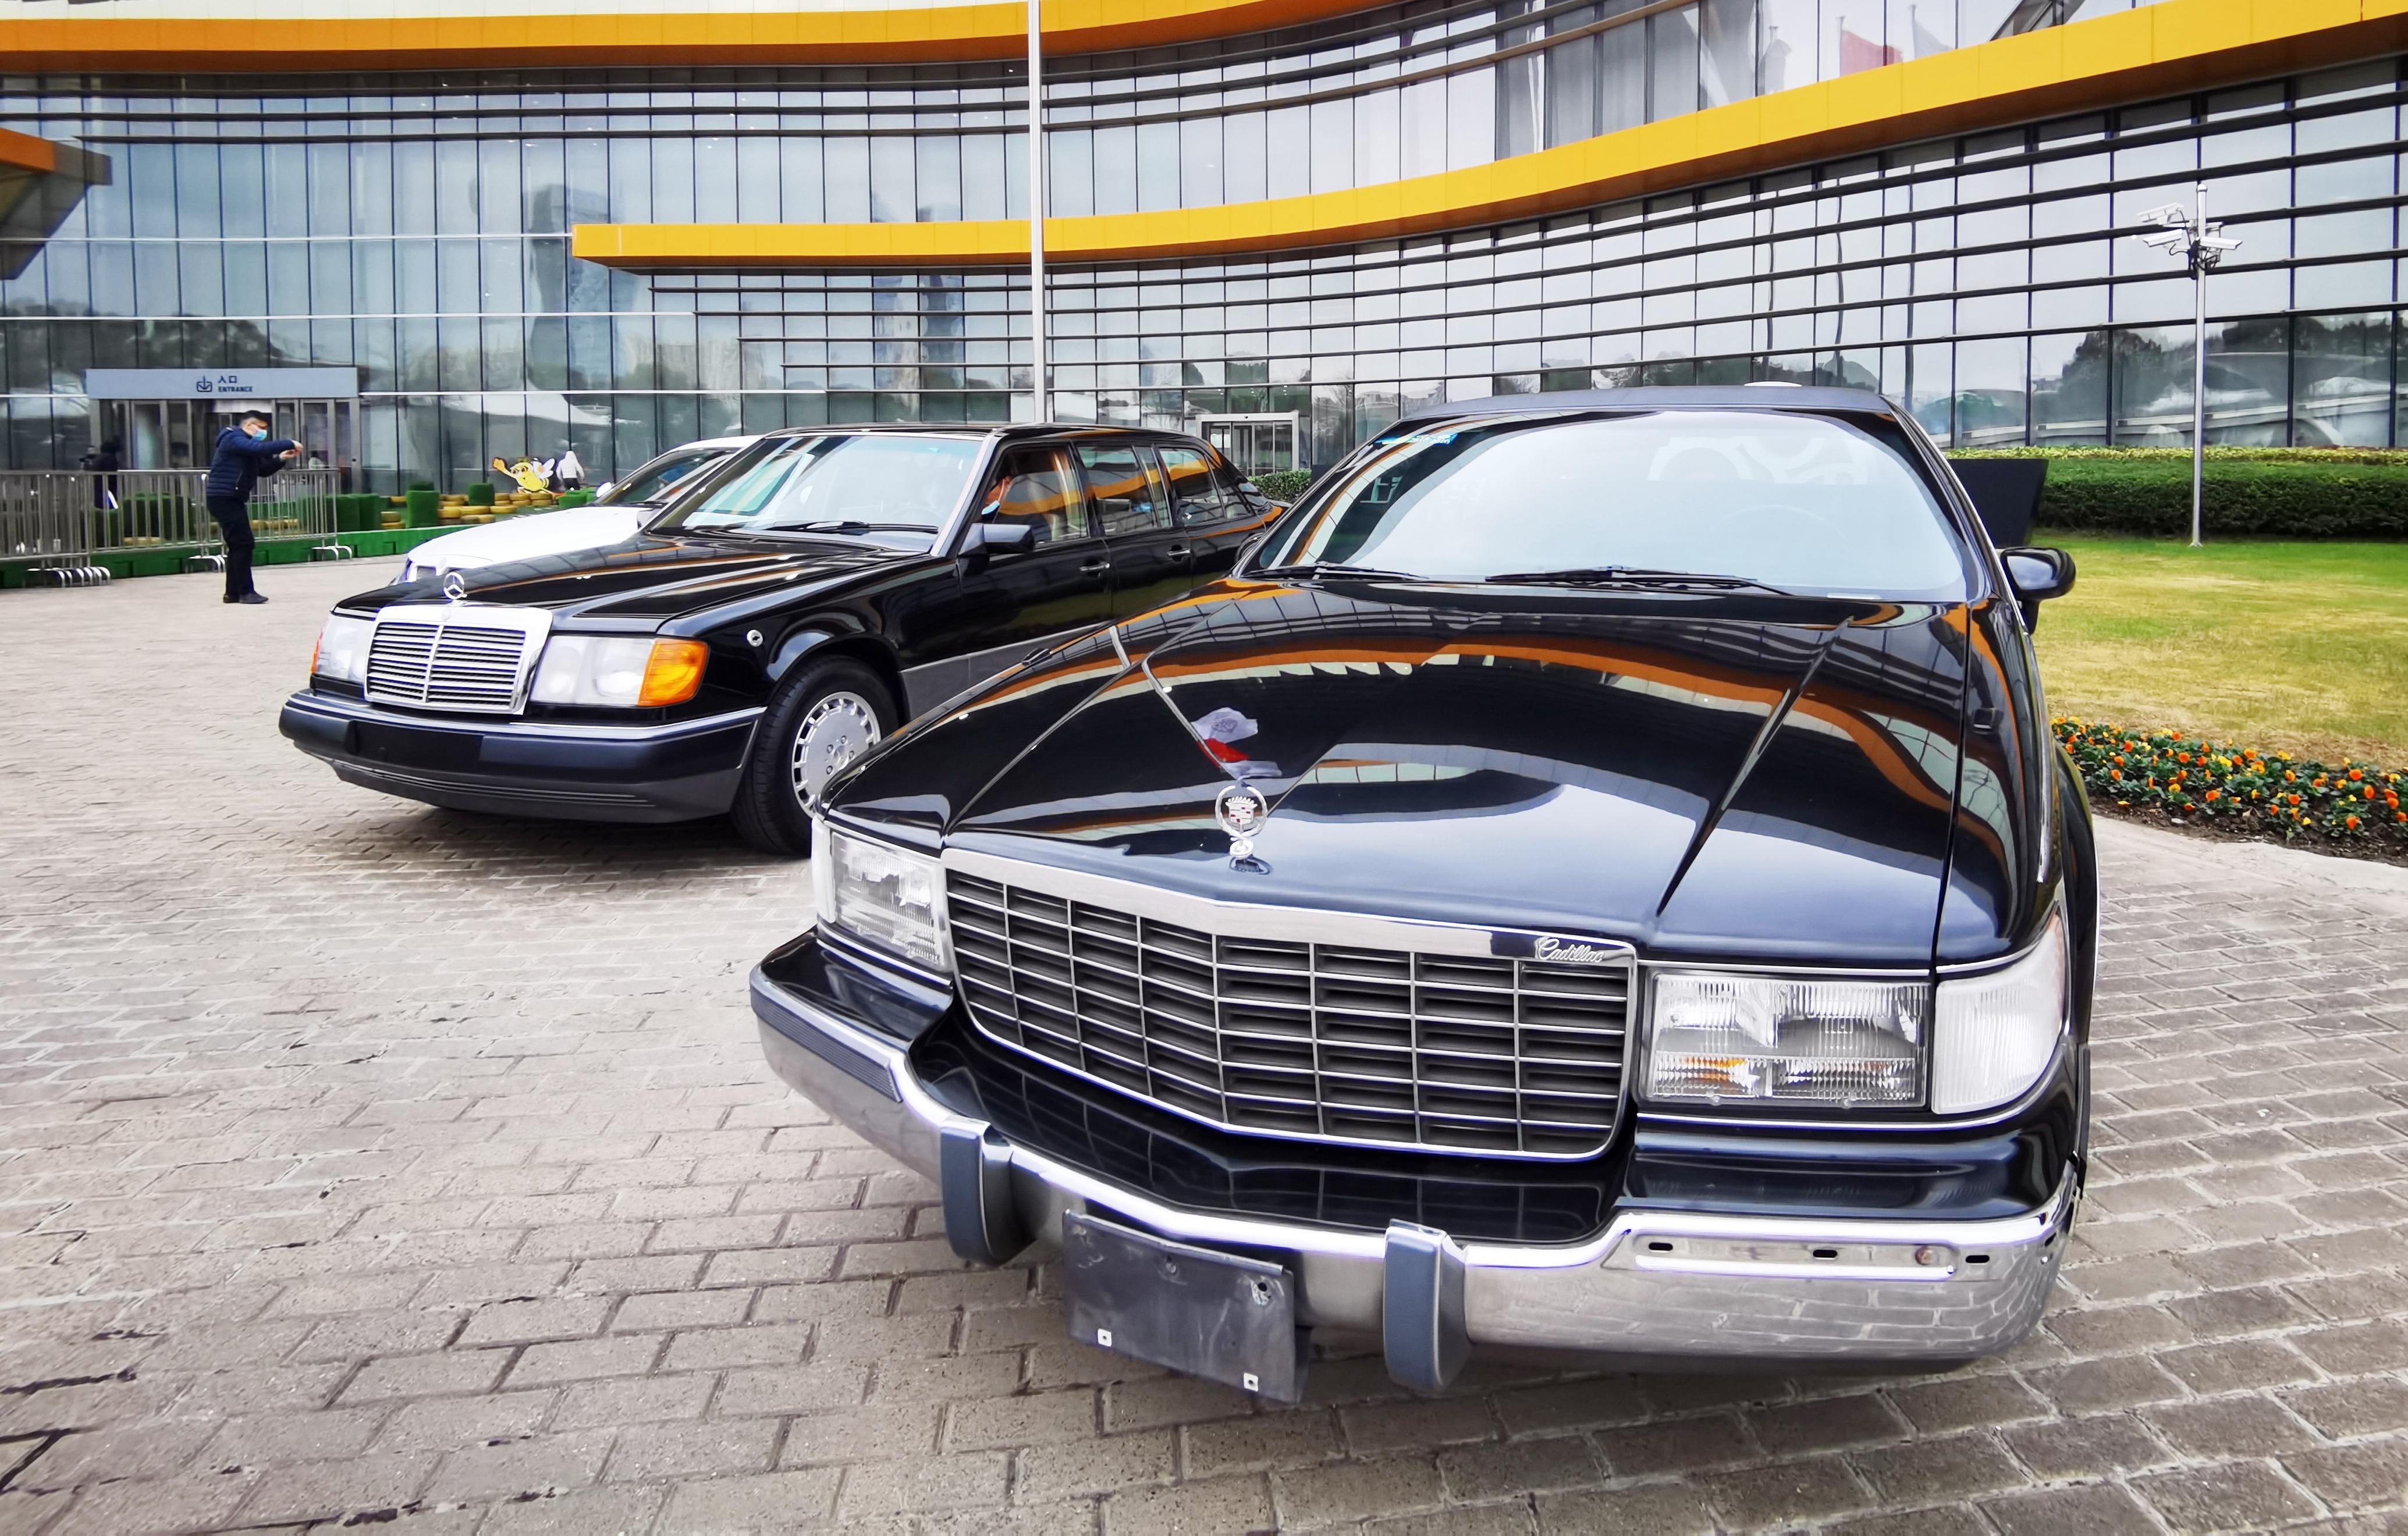 上海汽车博物馆喜获捐赠四辆载着时代记忆的轿车